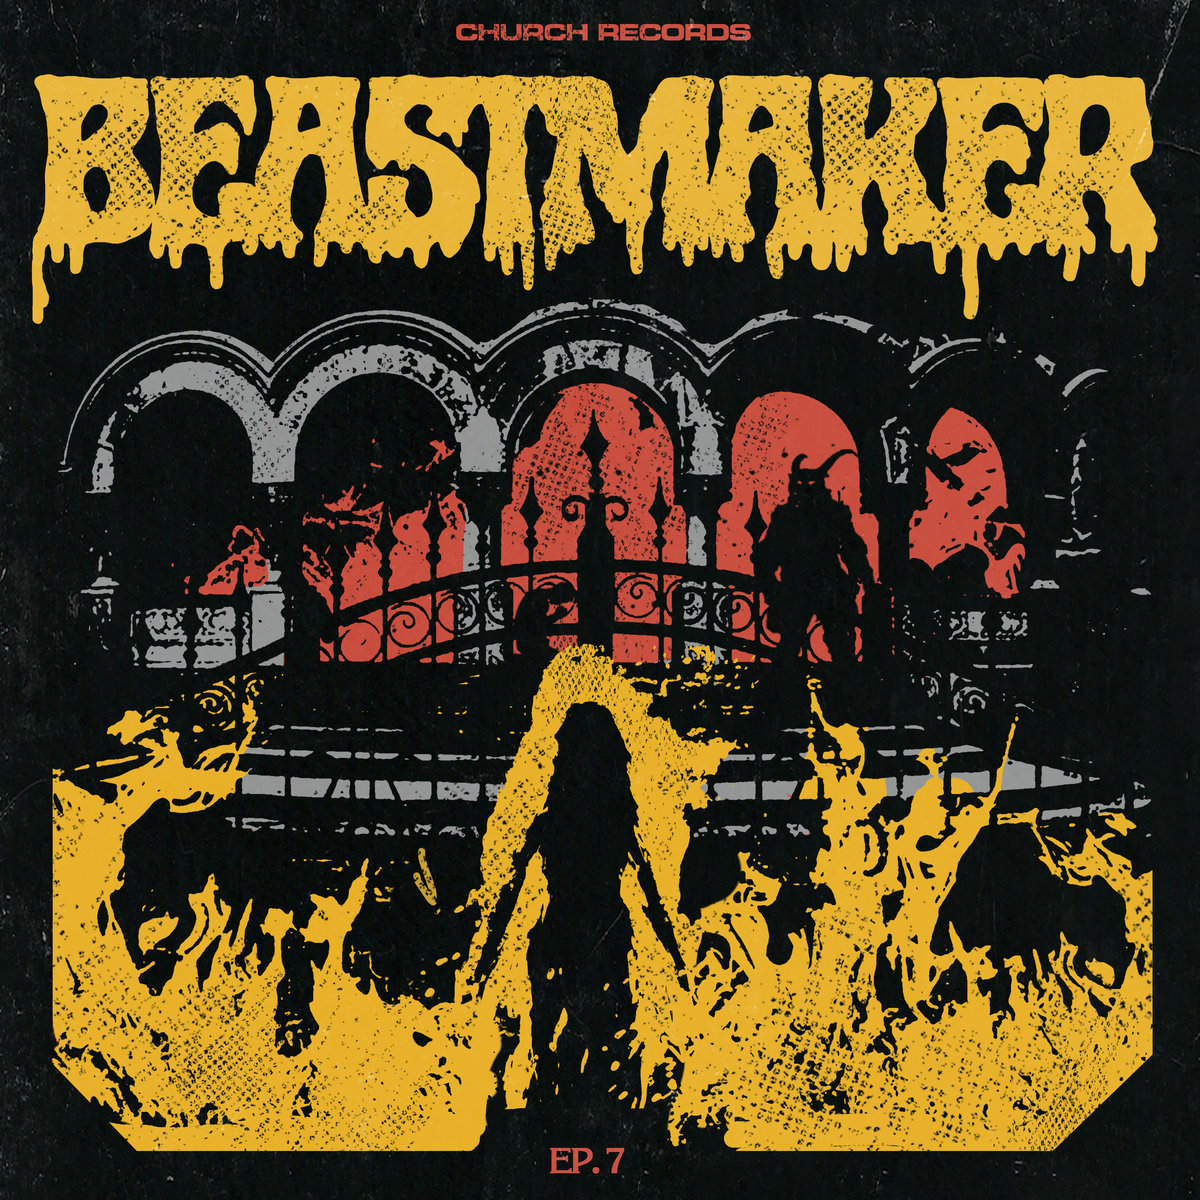 BEASTMAKER - EP. 7 cover 